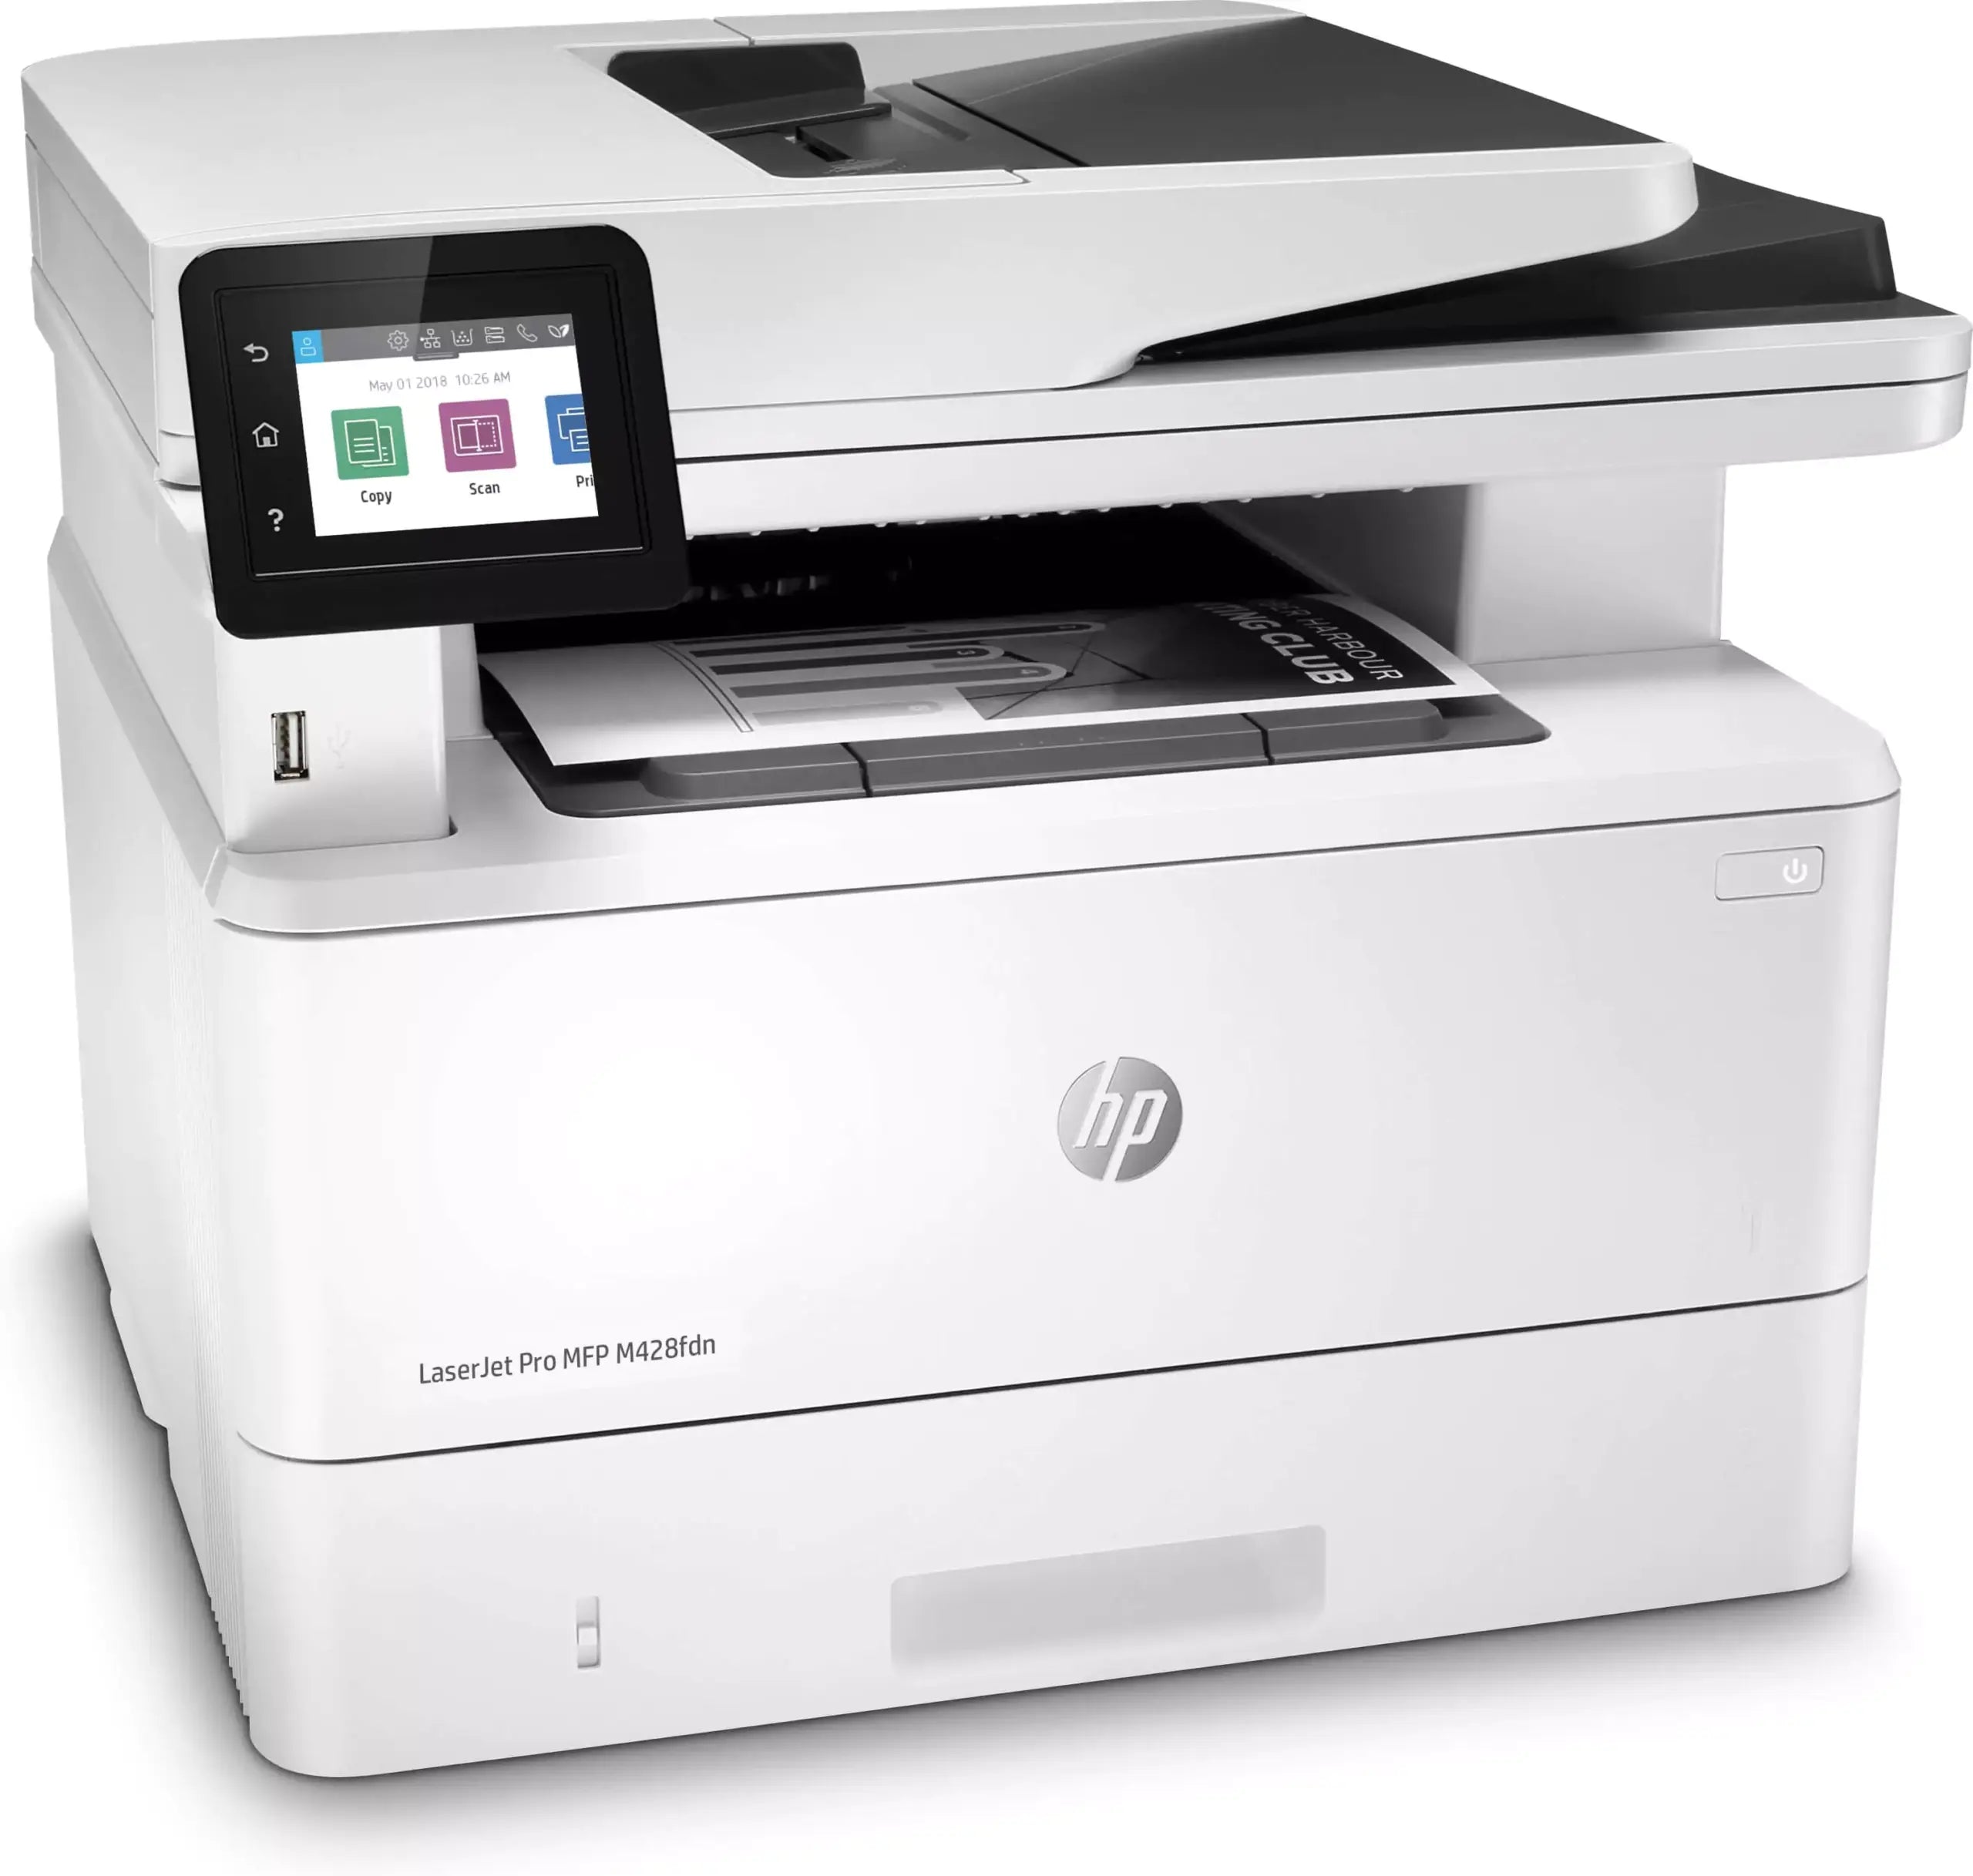 HP LaserJet Pro MFP M428fdn Multifunzione A4 Bianco/Nero 1200DPI 38 ppm Fax Rete Avanzata perfetta per i Professionisti Prodotto NUOVO